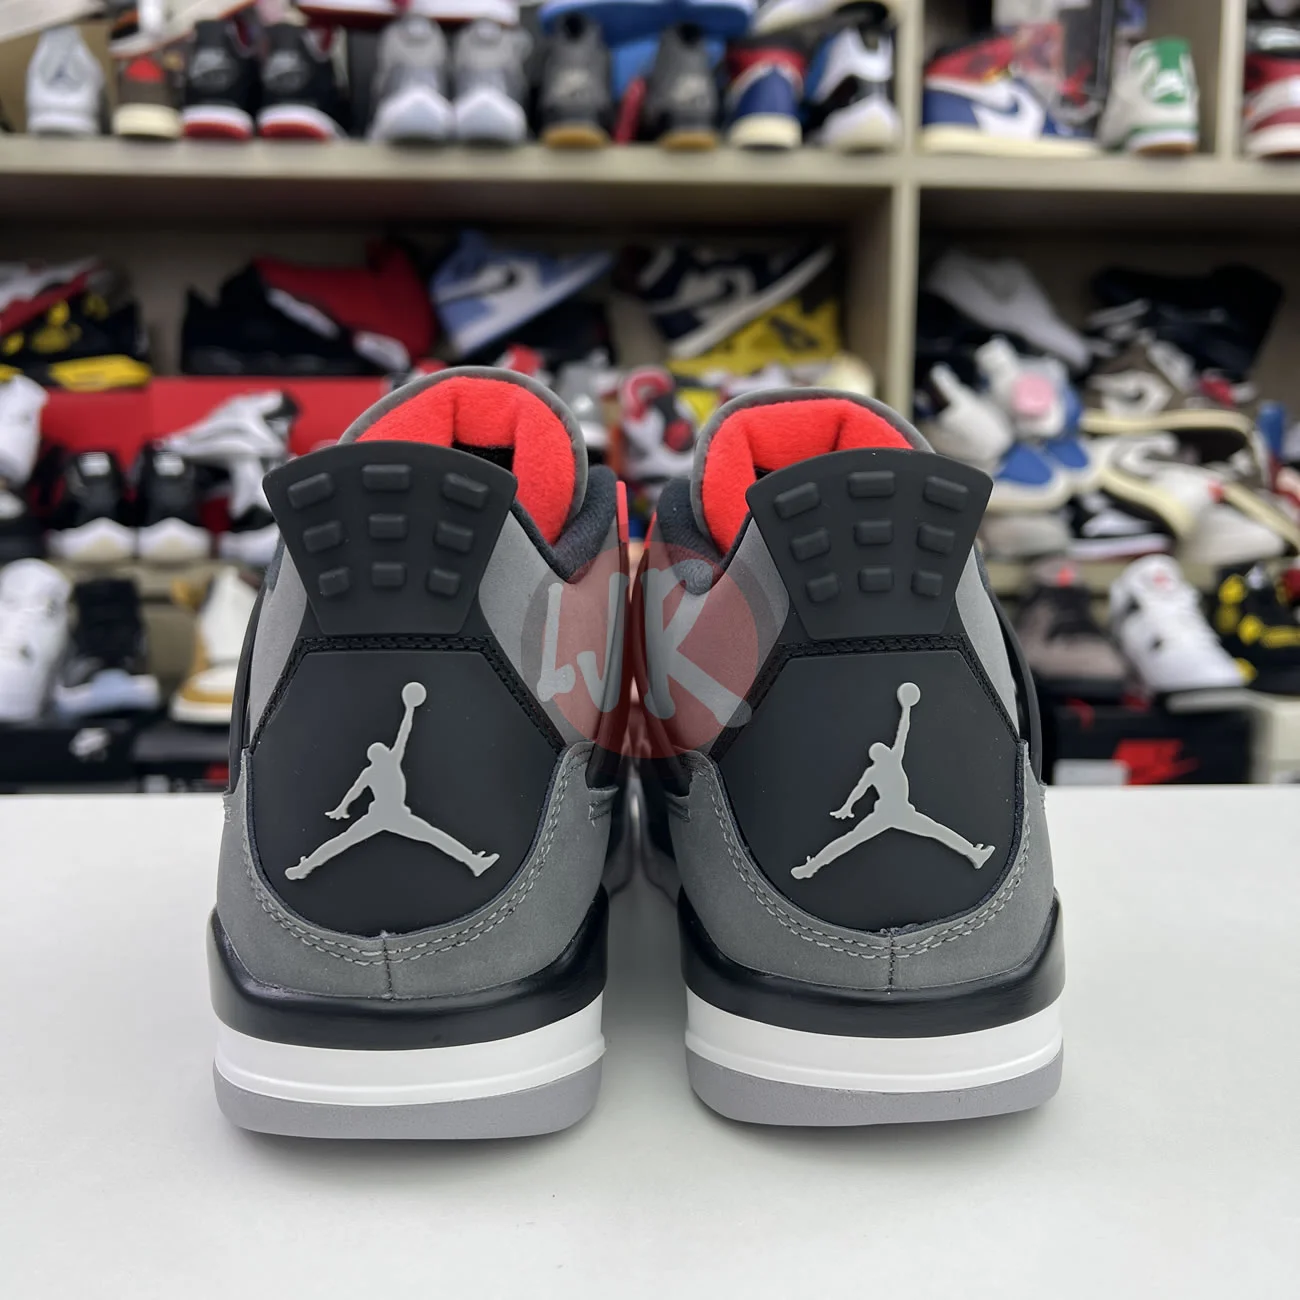 Air Jordan 4 Retro Infrared Dh6927 061 Ljr Sneakers (8) - bc-ljr.com